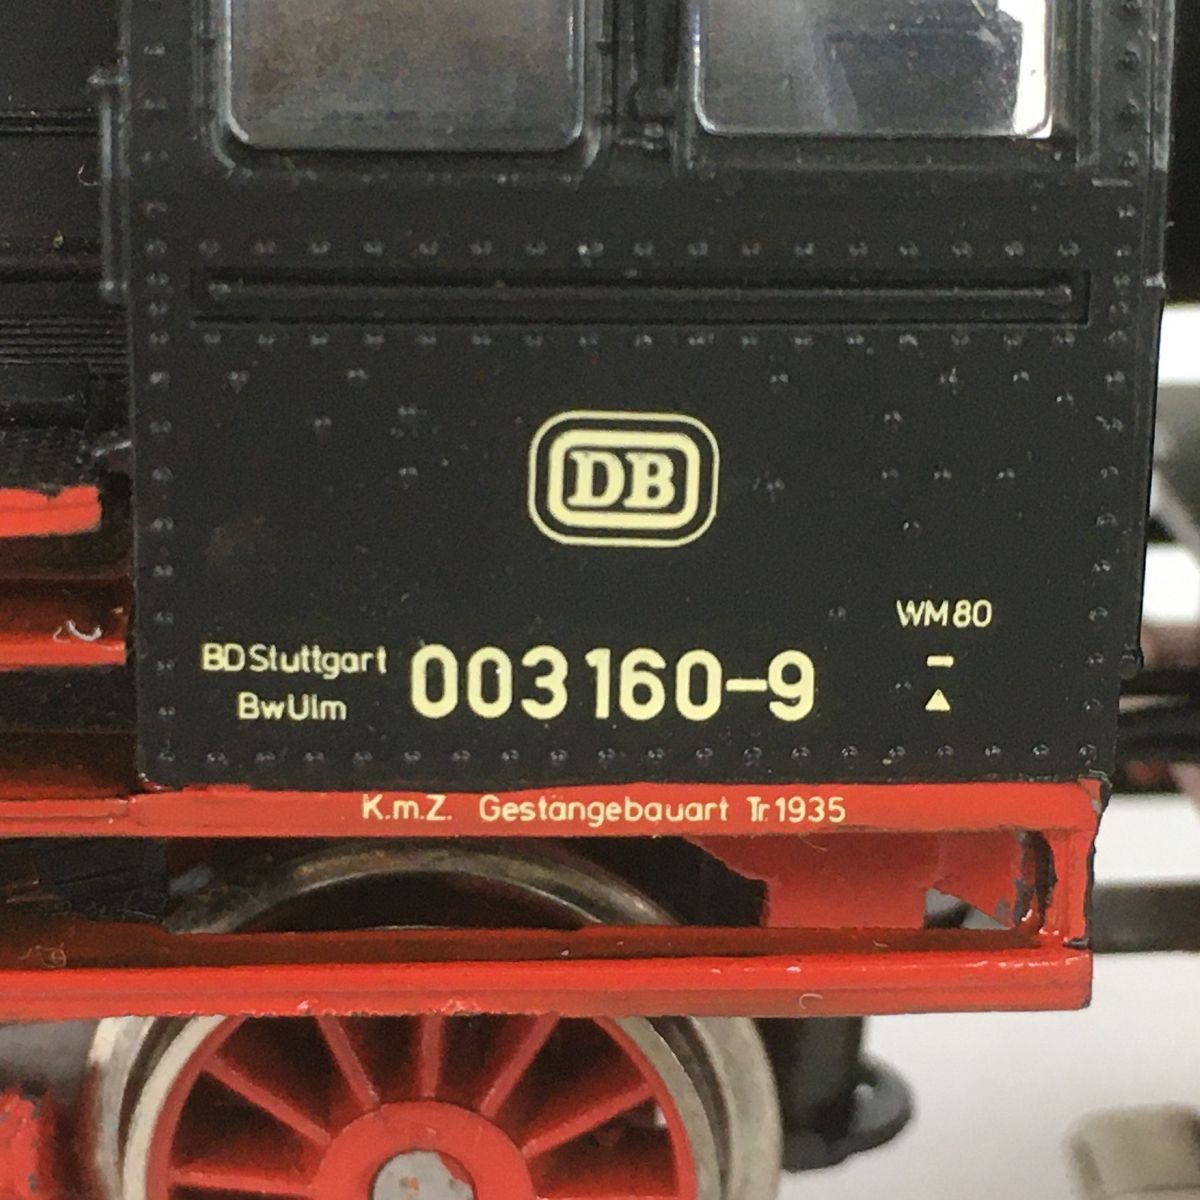 超特価メルクリン HOゲージ DB 003160-9 /DB 89-006 蒸気機関車 HO 未確認ジャンク品 外国車輌